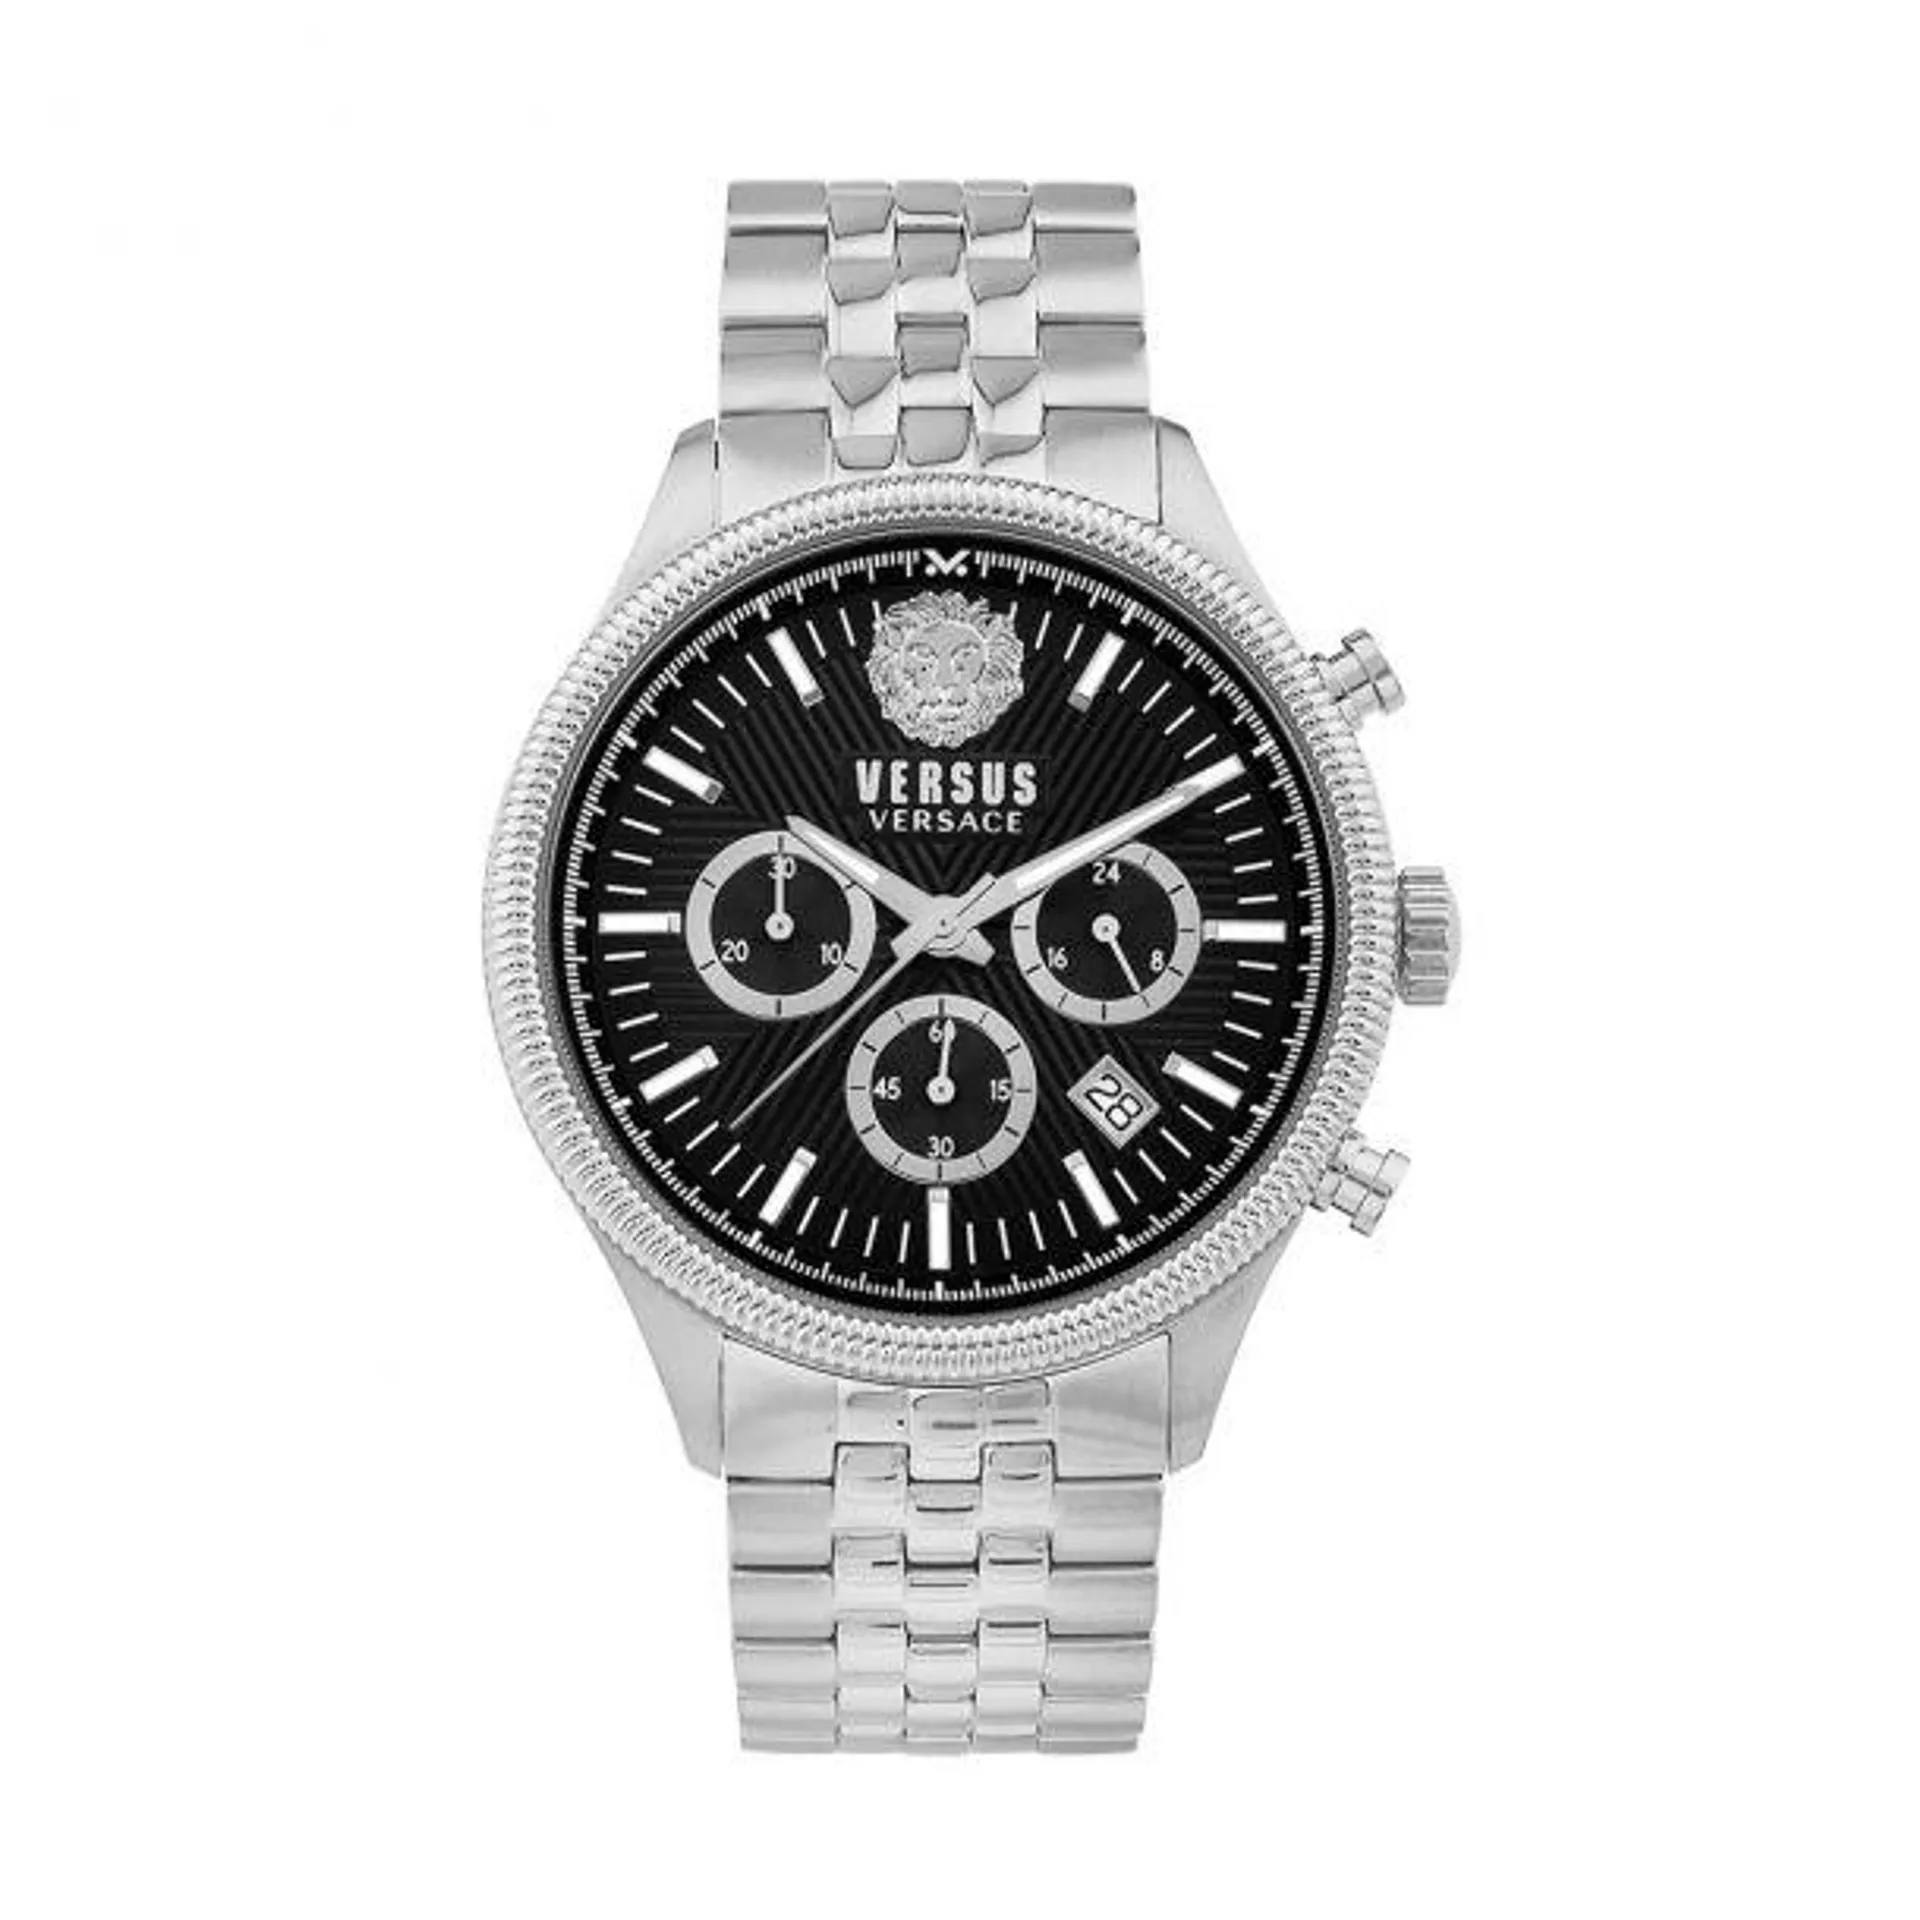 Versus Versace Colonne Chrono Men's 44mm Silver Bracelet Watch - Black Dial